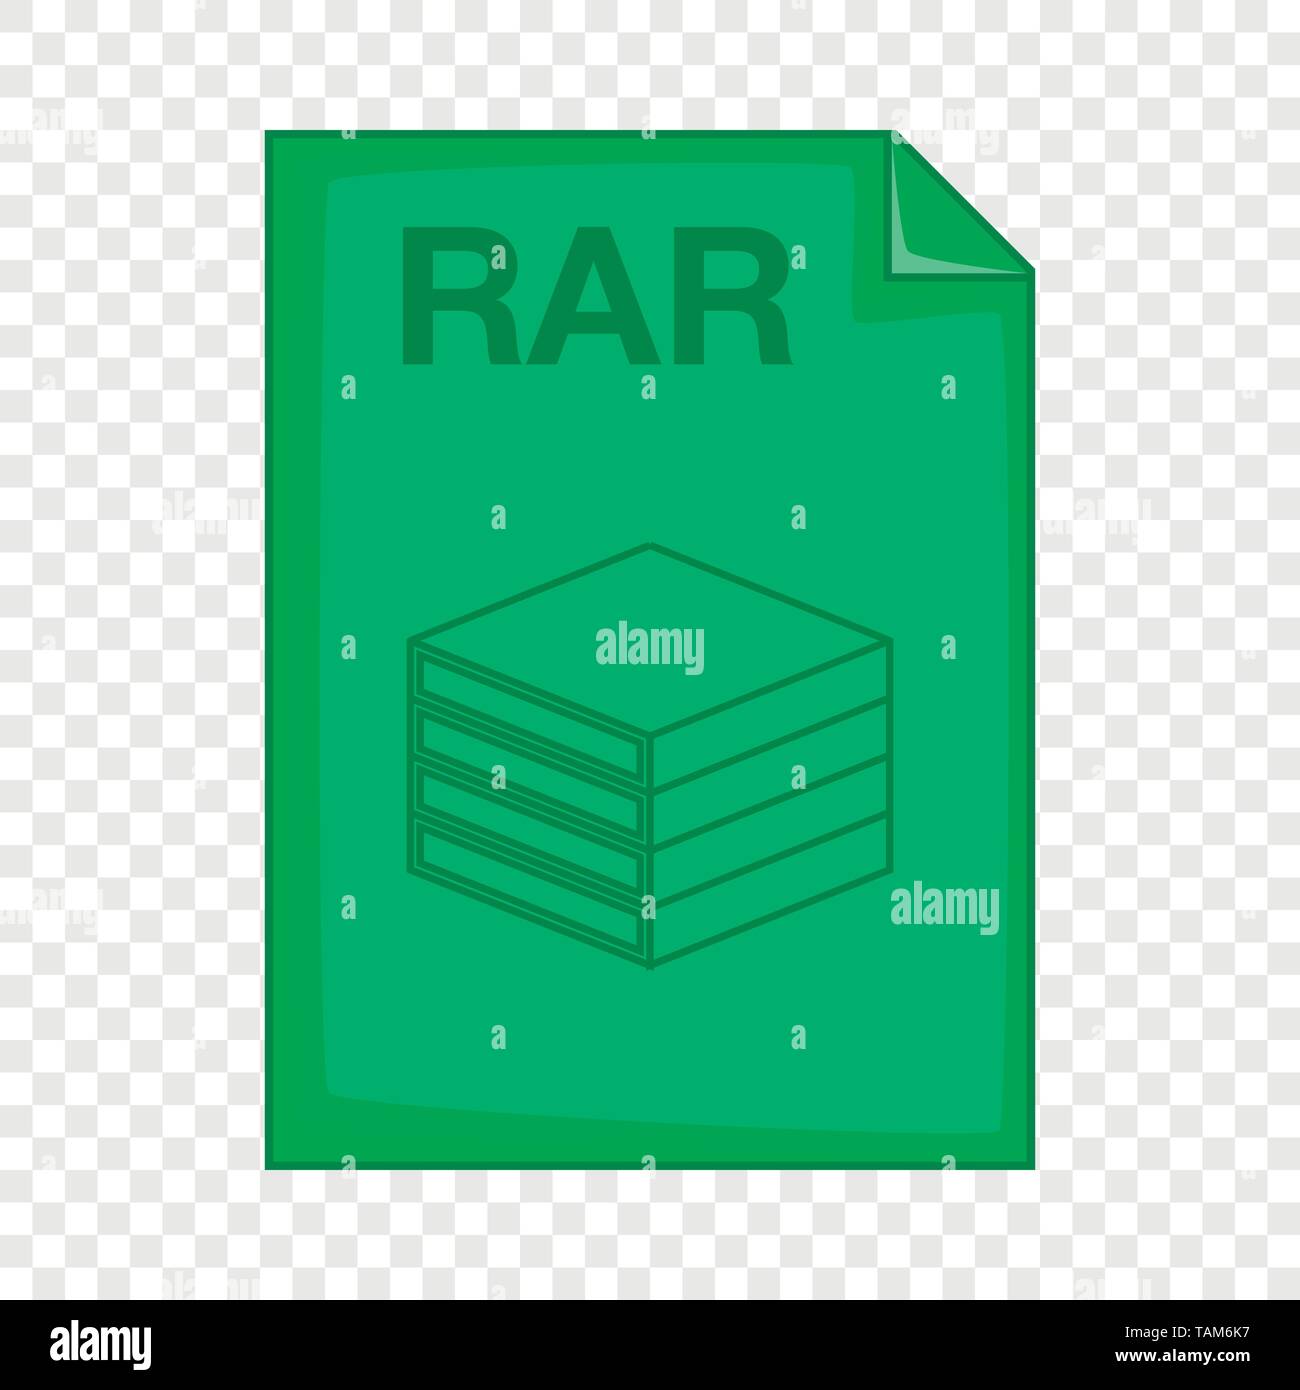 RAR file icon, cartoon style Stock Vector